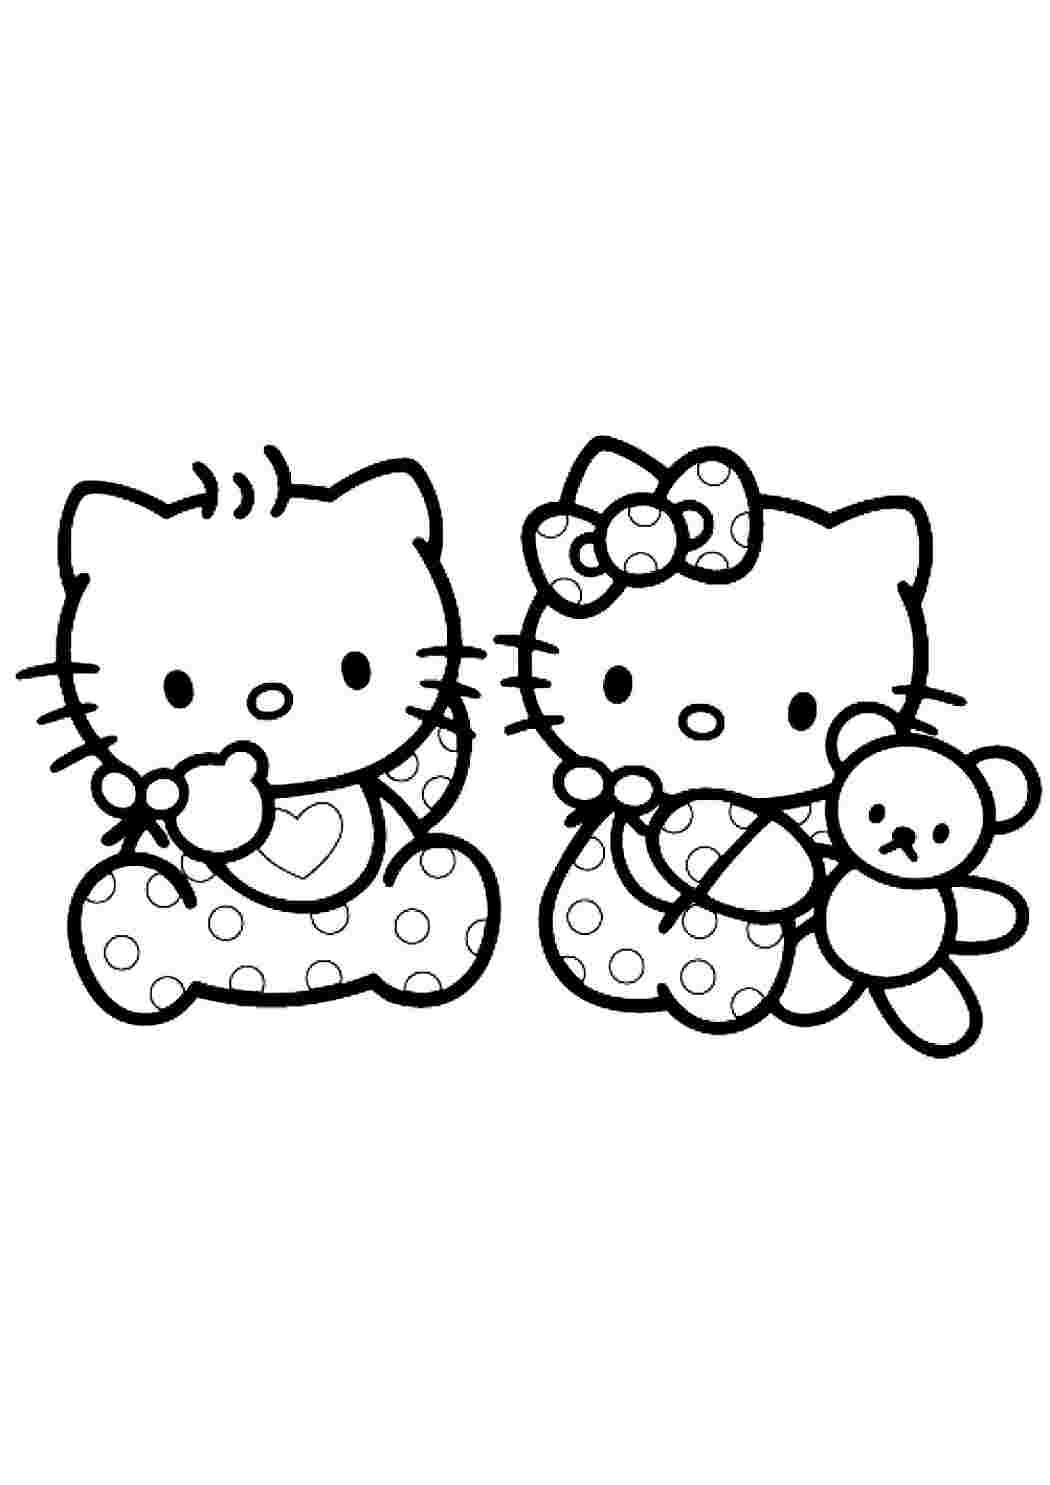 Скачать и распечатать раскраску Хелло Китти / Hello Kitty